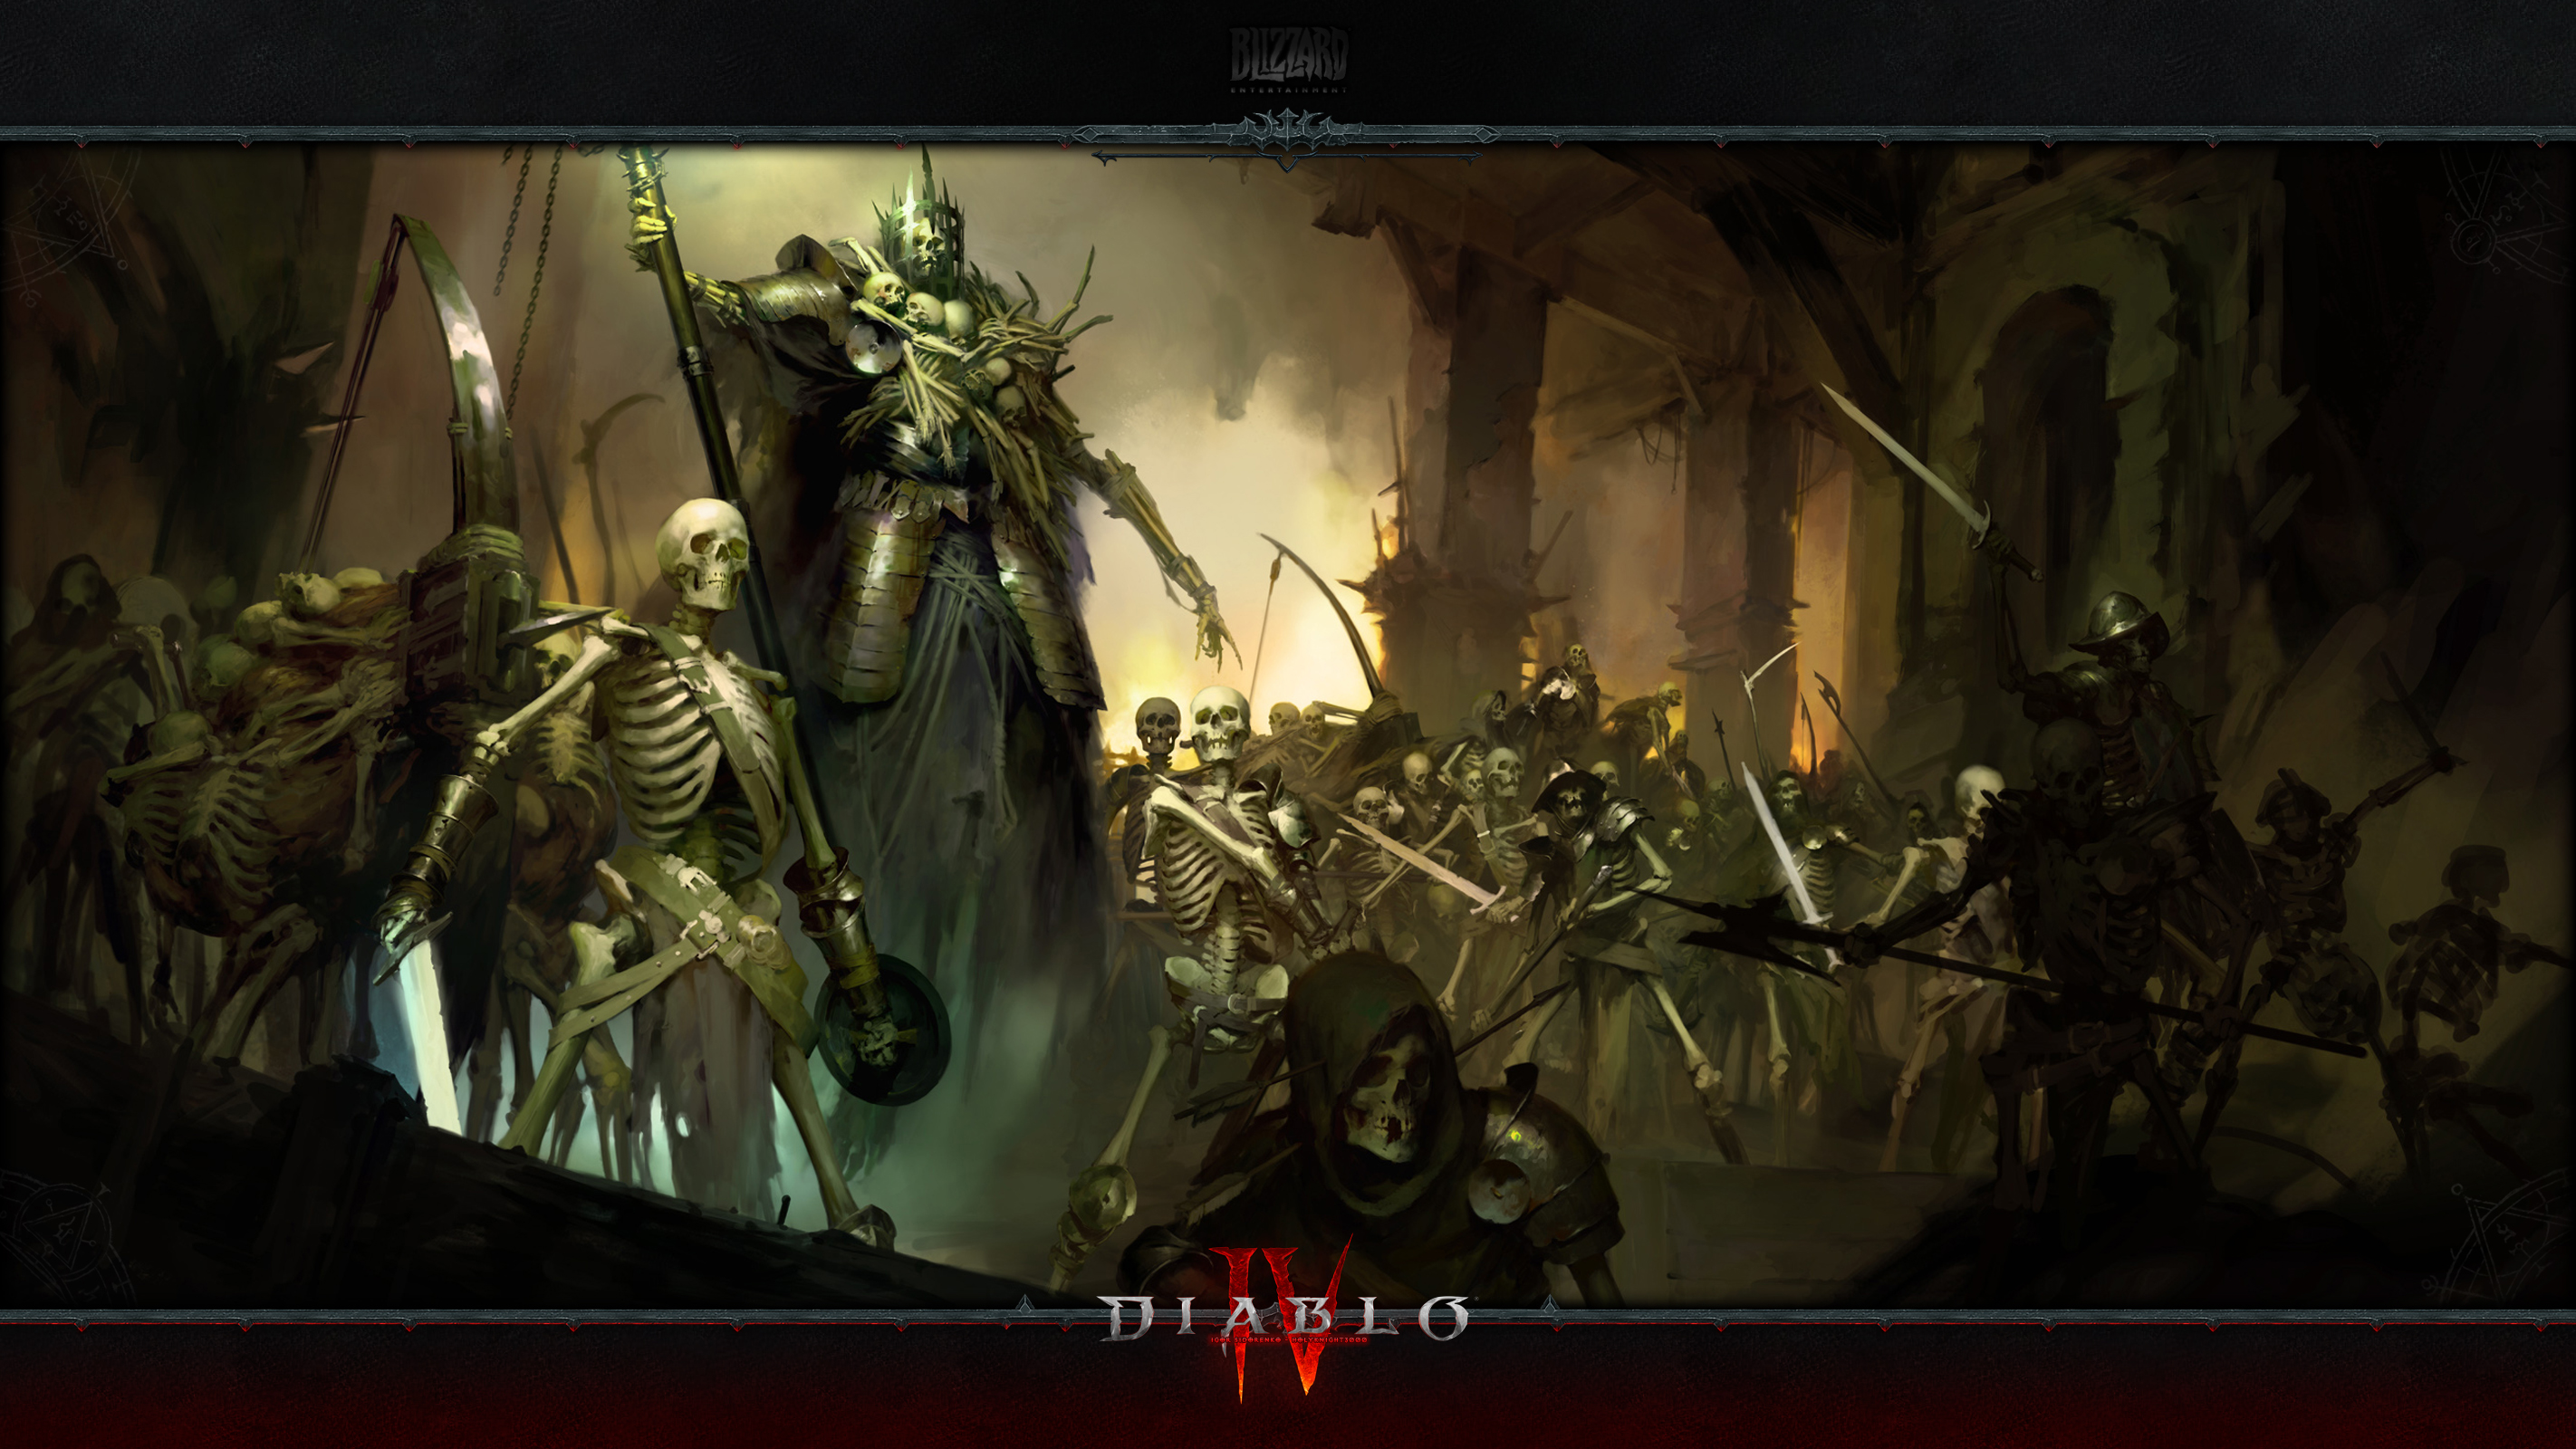 Diablo IV #9: The Skeleton Family